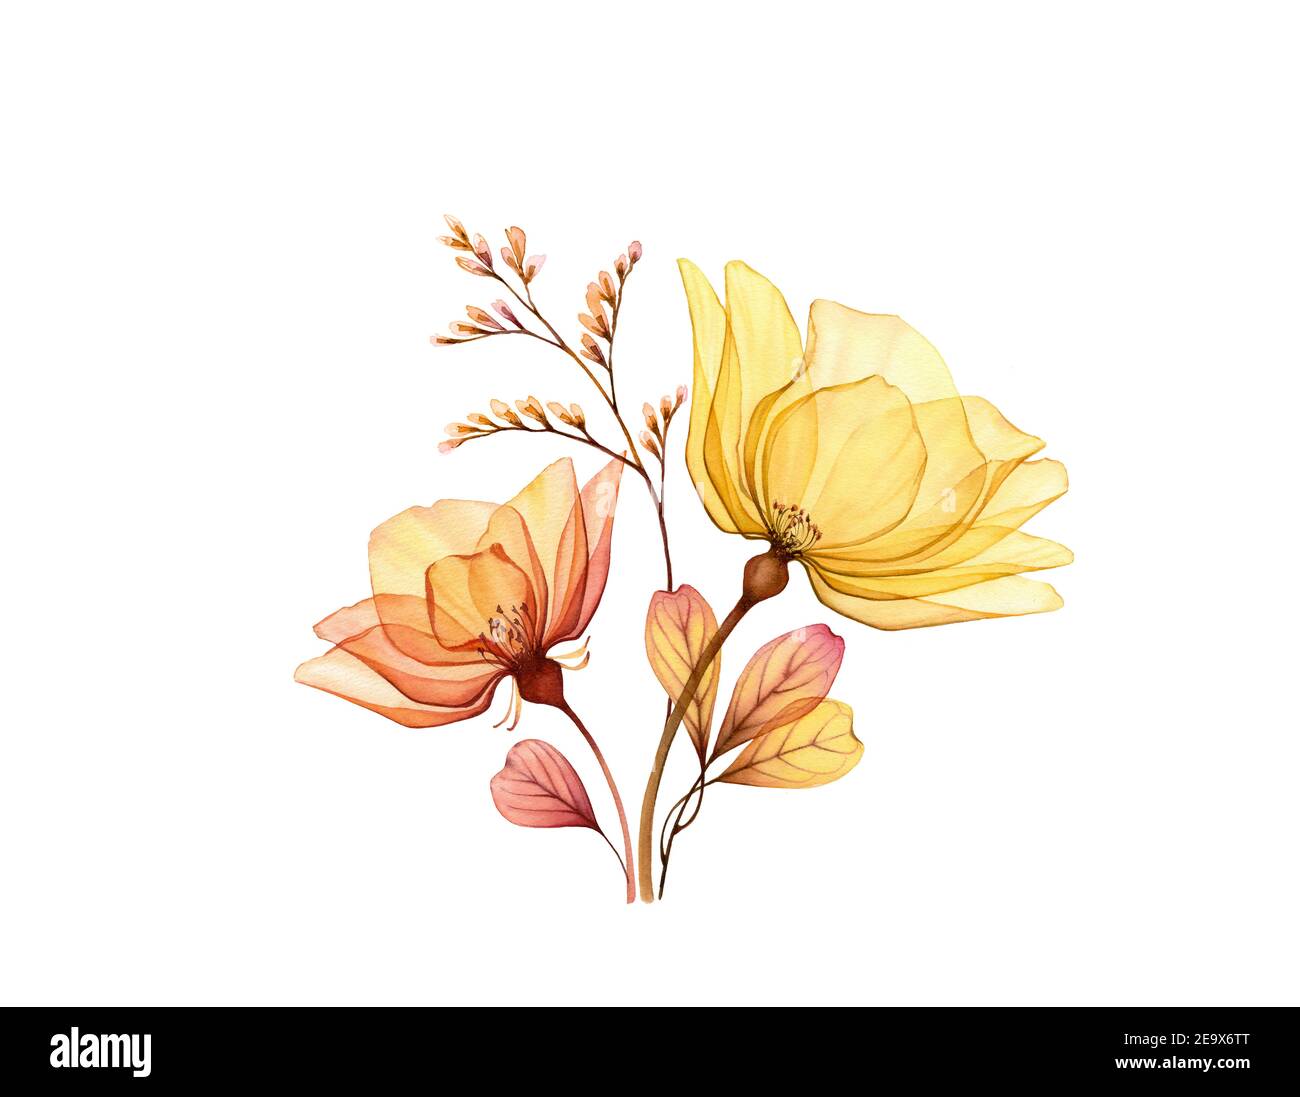 Aquarell Rosenstrauß. Transparente gelbe Blüten mit Zweig und Blätter isoliert auf weiß. Handbemaltes Vintage Arrangement. Botanische Abbildung Stockfoto